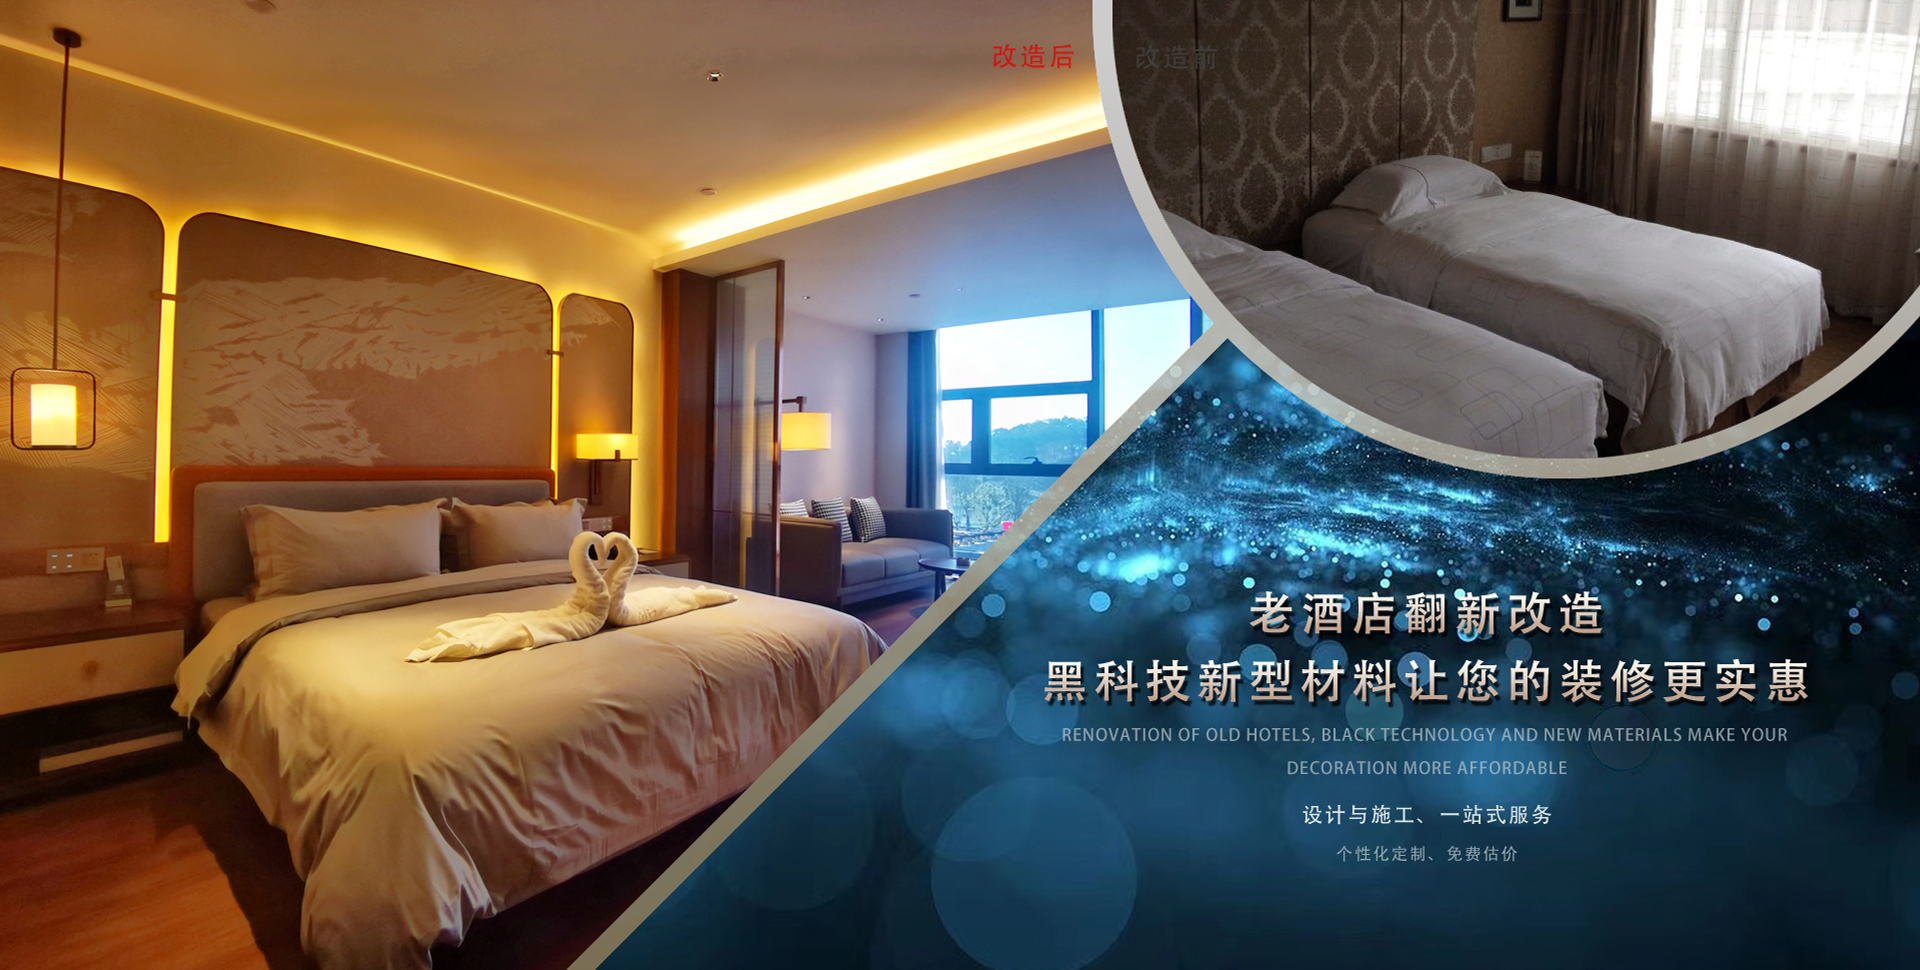 上海精品酒店装修公司-上海精品酒店房间改造费用价格-上海精品酒店装修方案效果图